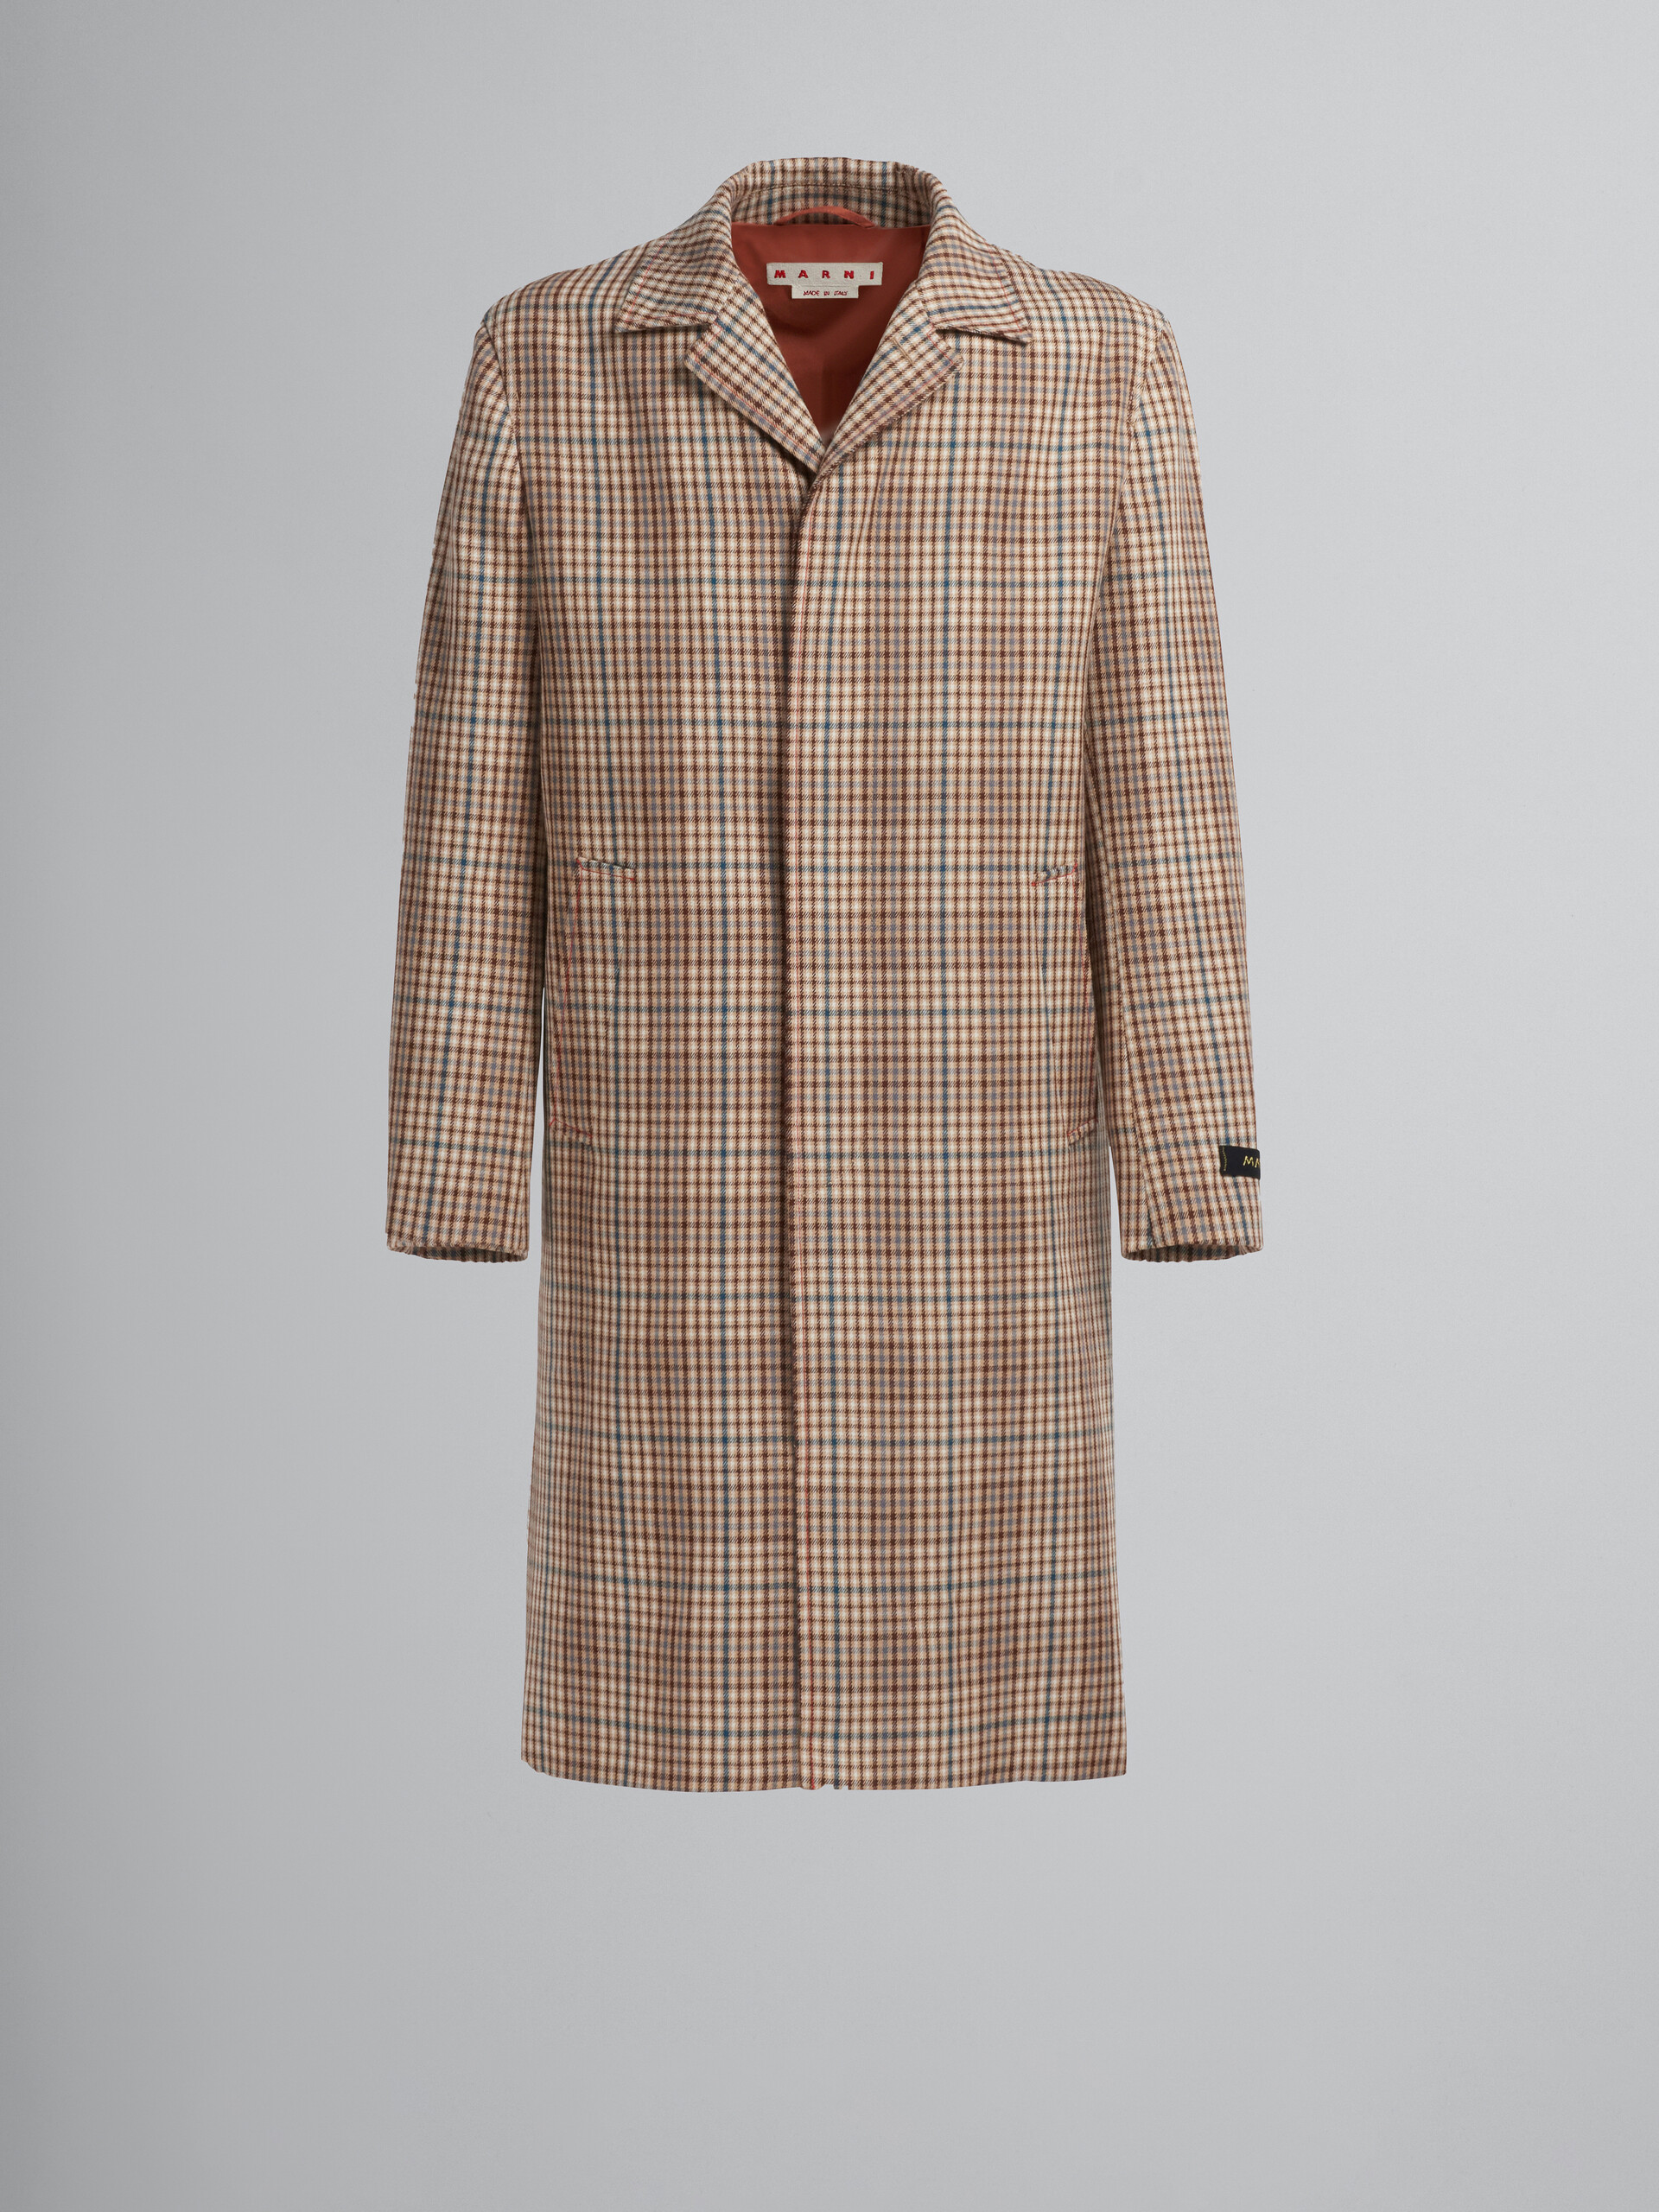 Long coat in beige chequered wool - Coat - Image 1